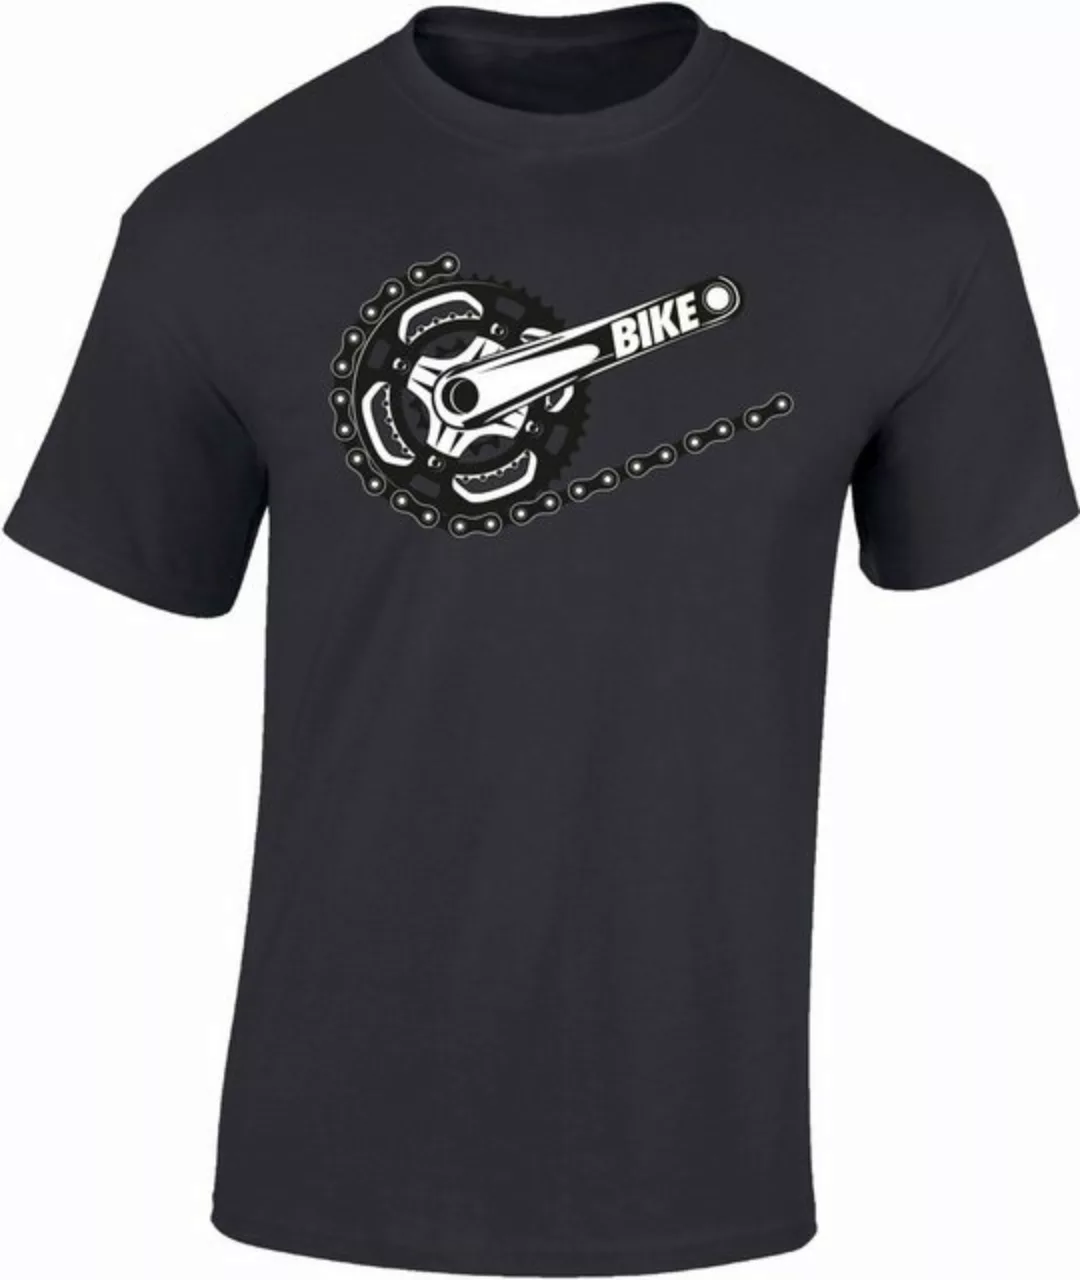 Baddery Print-Shirt Fahrrad T-Shirt : Bike - Sport Tshirts Herren - Mountai günstig online kaufen